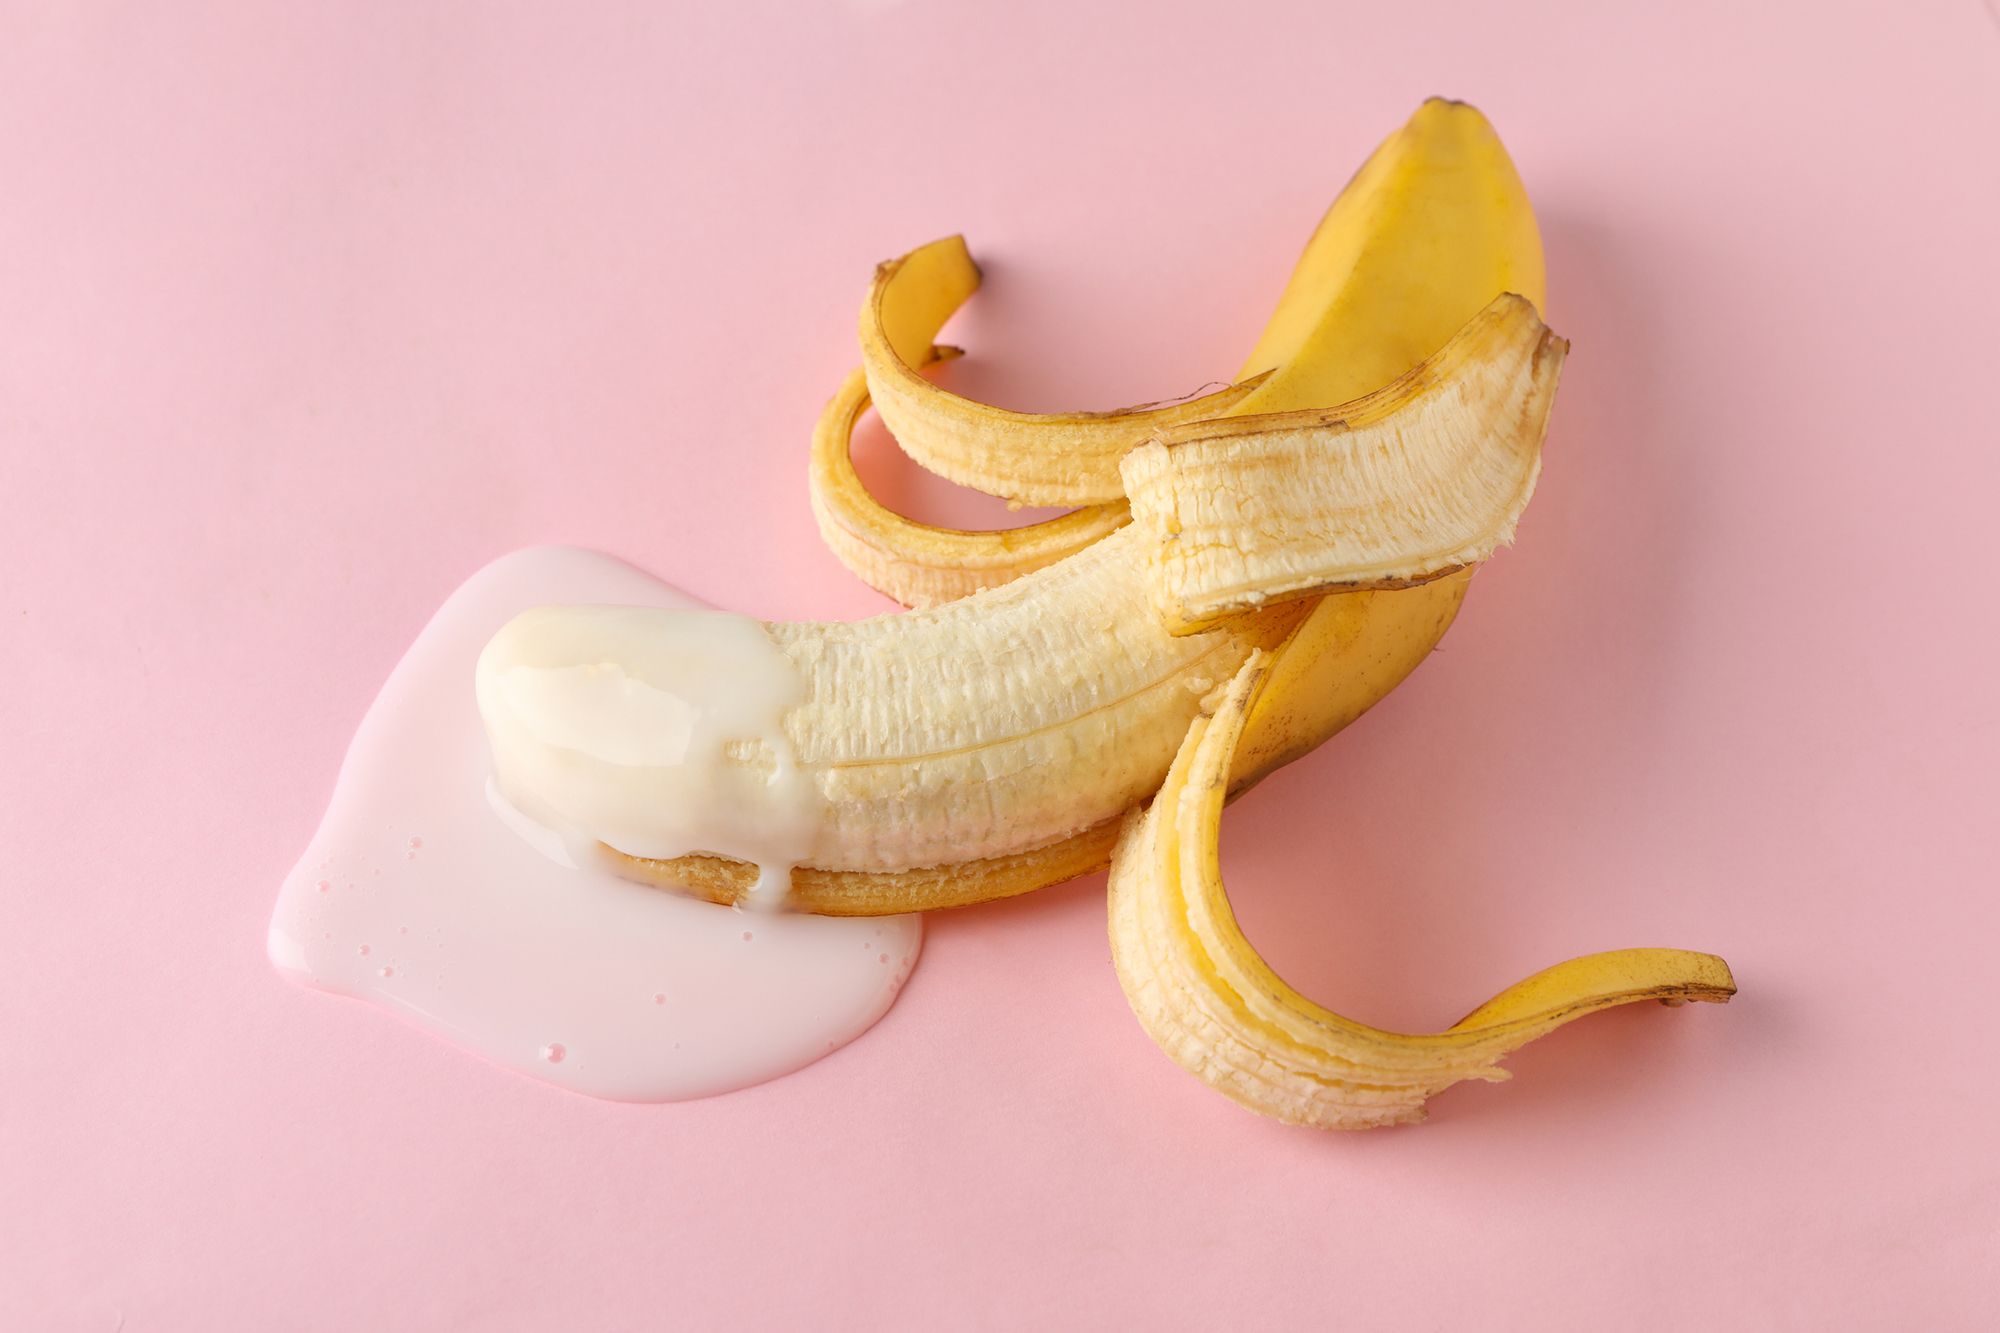 Halb geschälte Banane mit Milch auf dem vorderen Ende